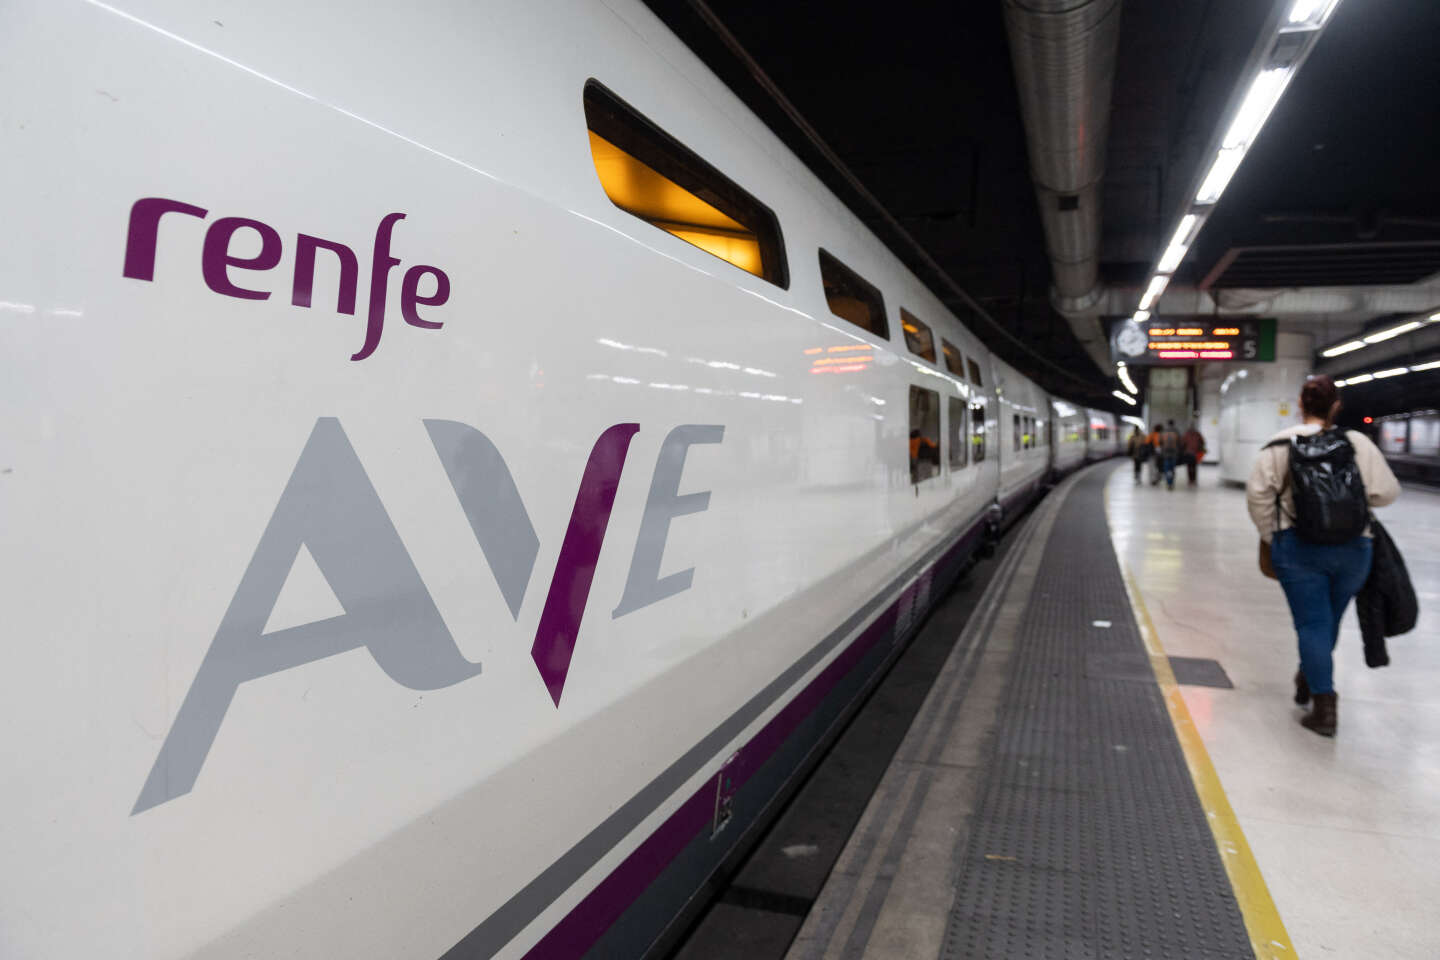 In Spagna lo stato dei treni massicci ha portato alle dimissioni del Segretario di Stato ai Trasporti e del Presidente di Renfe